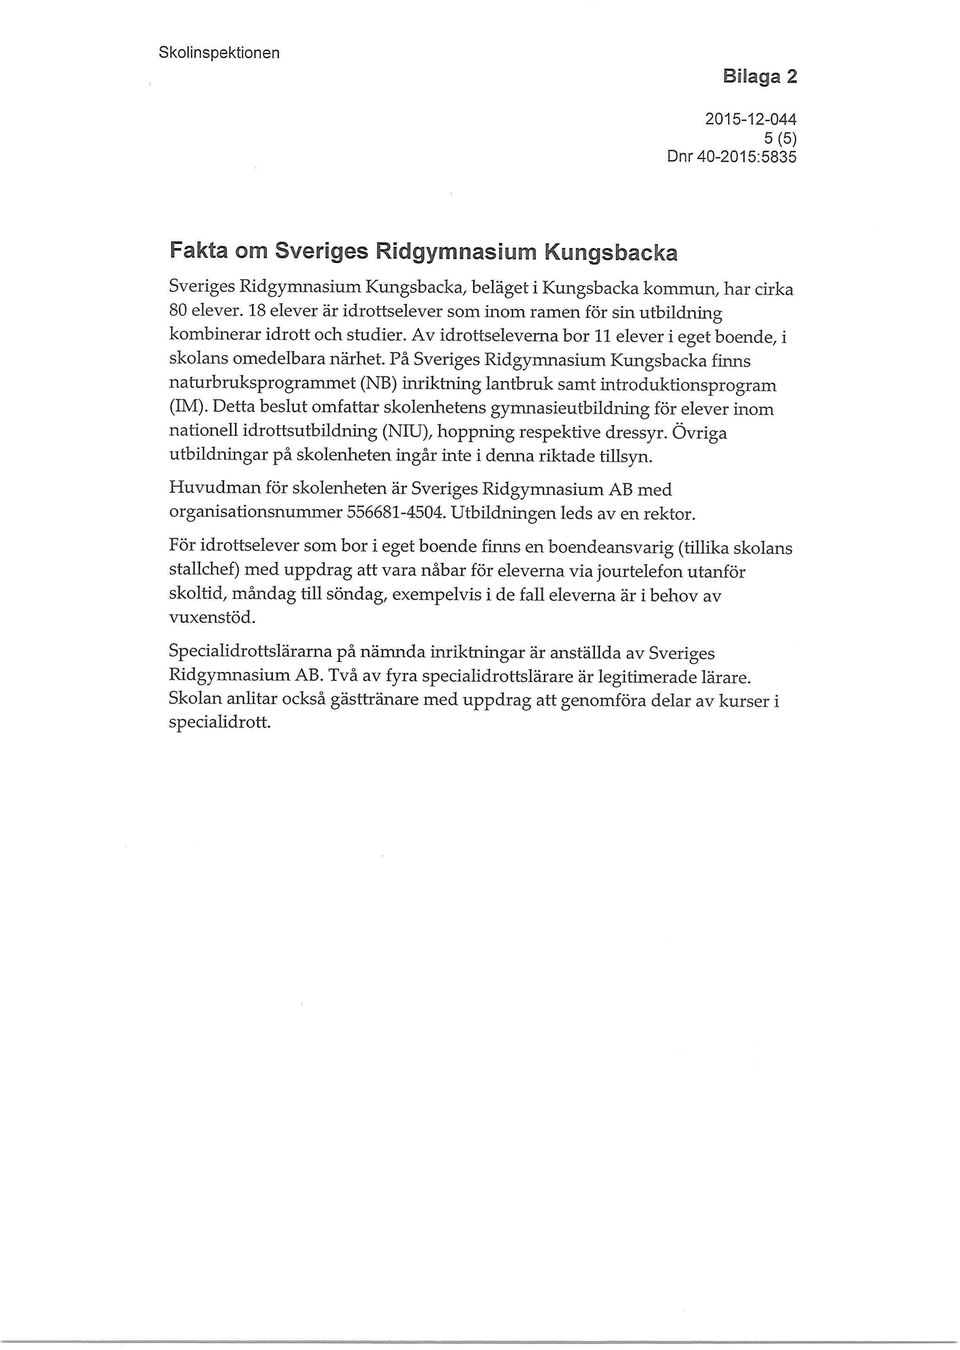 På Sveriges Ridgymnasium Kungsbacka finns naturbruksprogranunet (NB) inriktning lantbruk samt introduktionsprogram (IM).